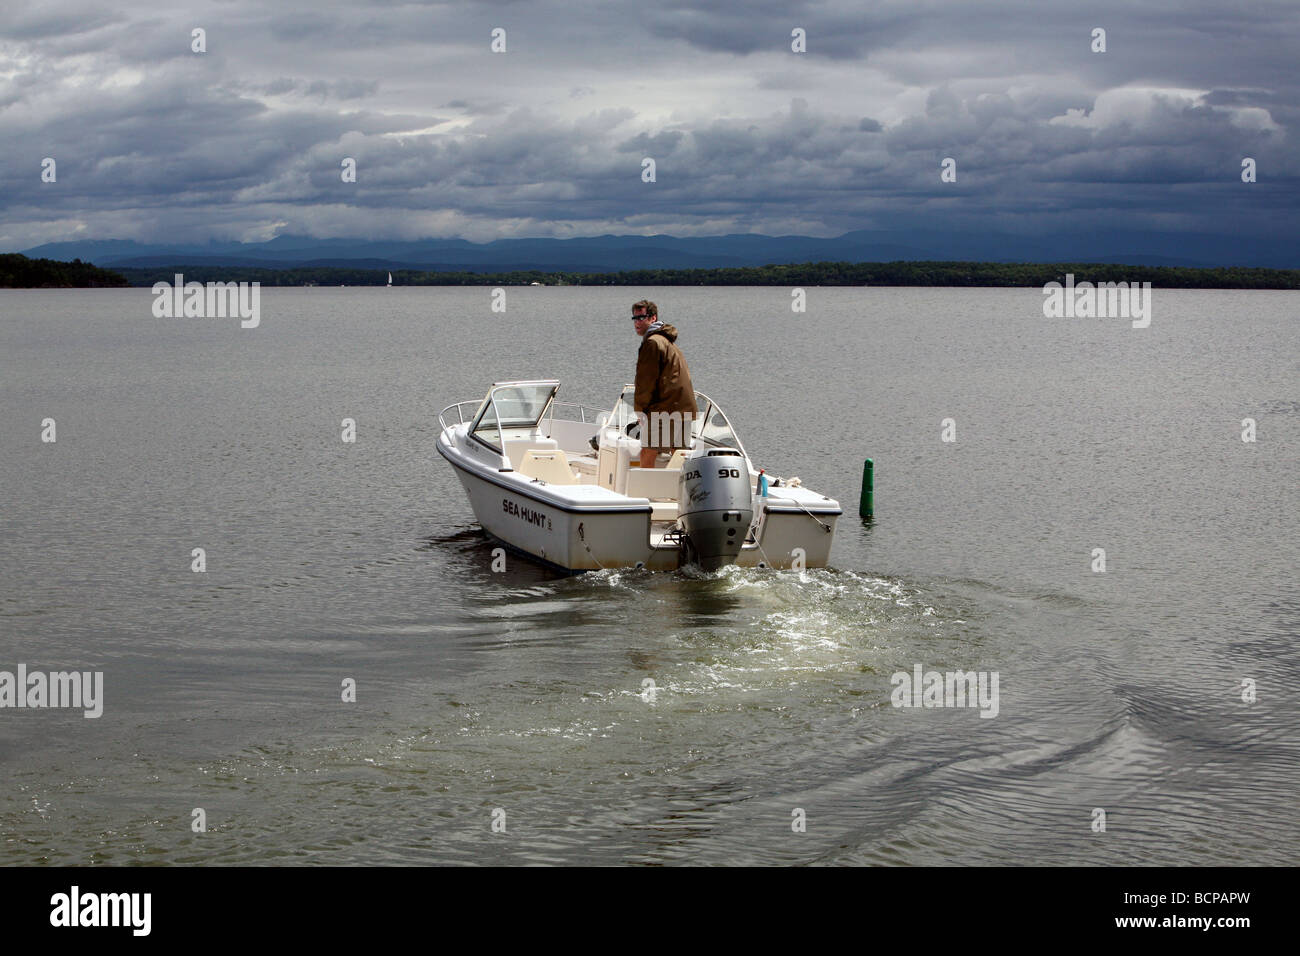 Un giovane uomo prendendo il suo piede 17 utilitaria motoscafo. La scena è il lago Champlain con il verde delle montagne del Vermont. Foto Stock